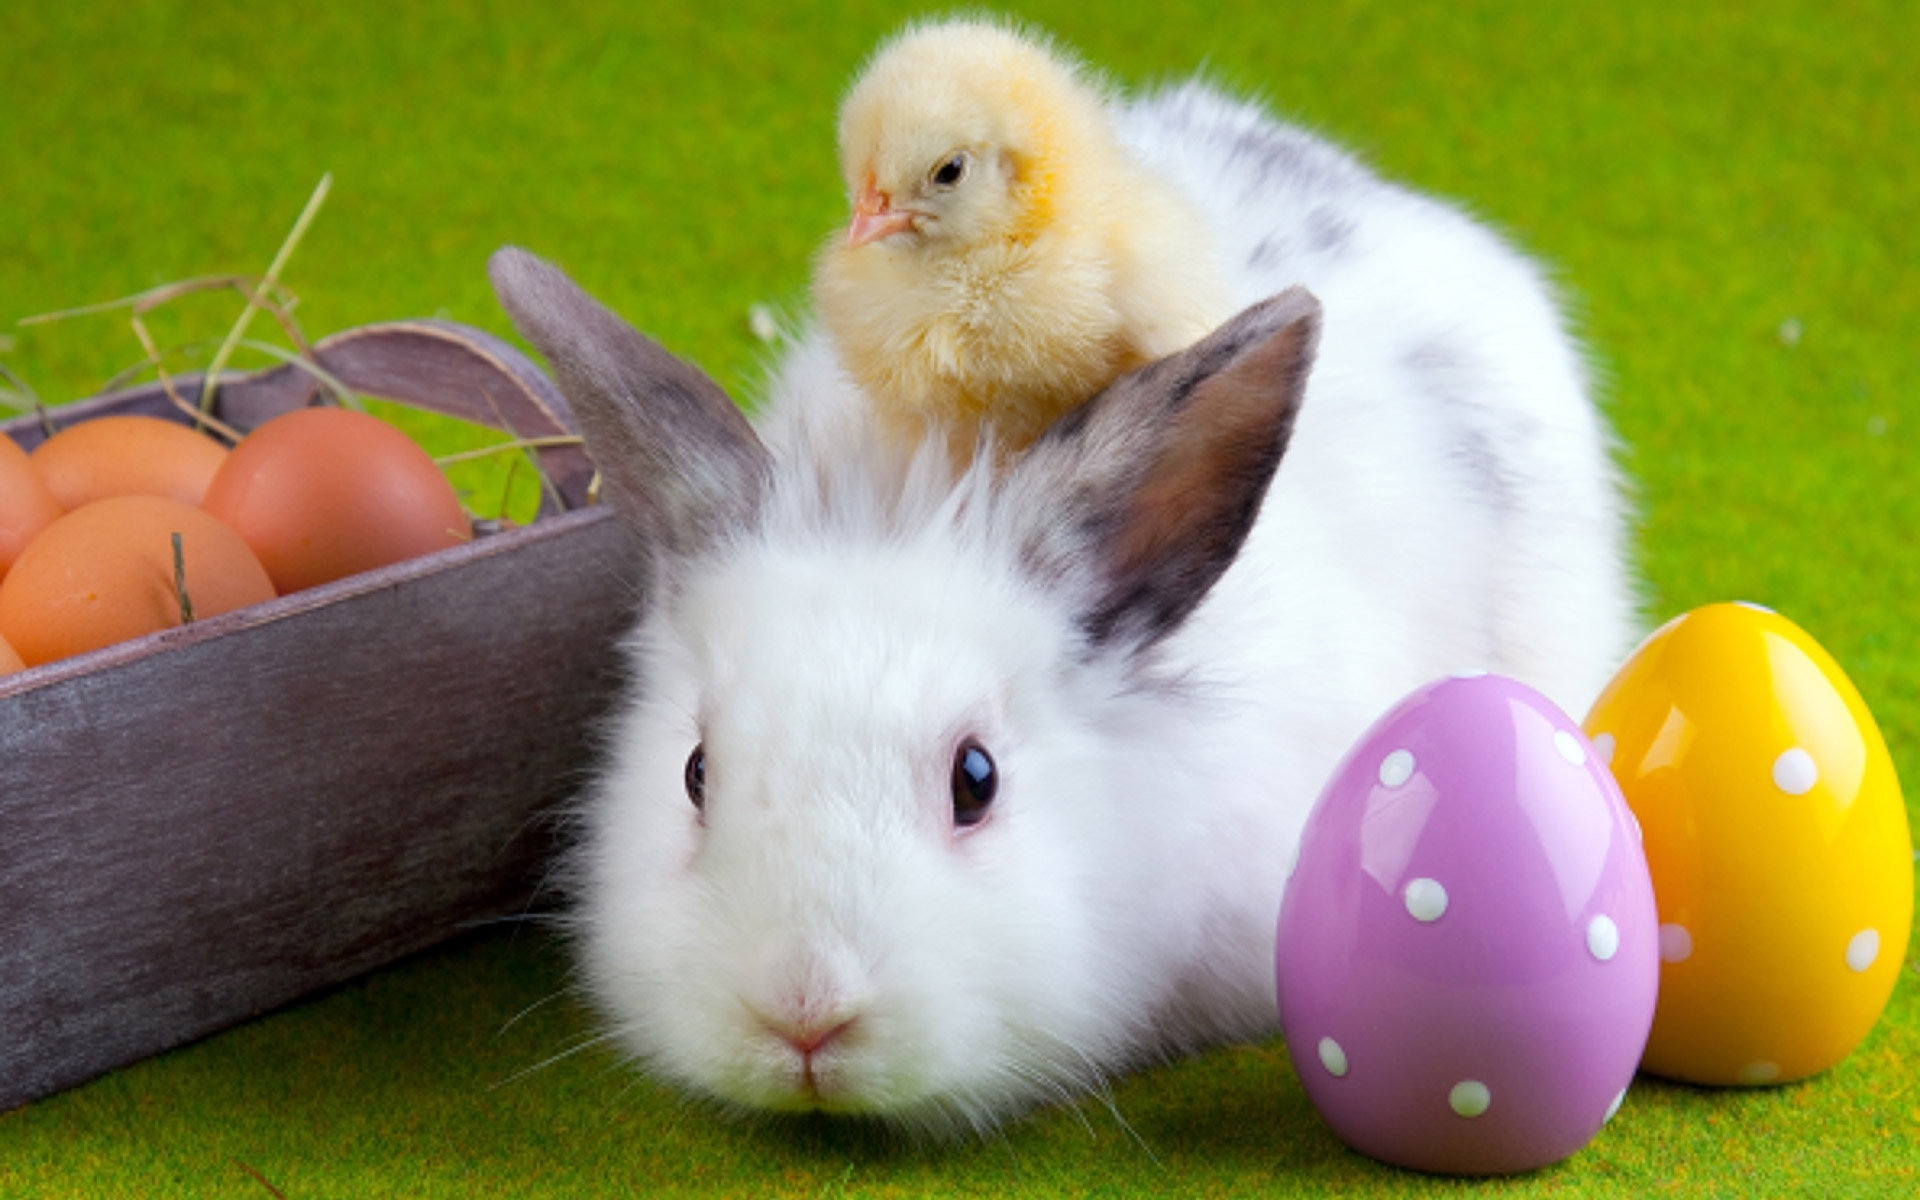 chicks, rabbits, animals, birds